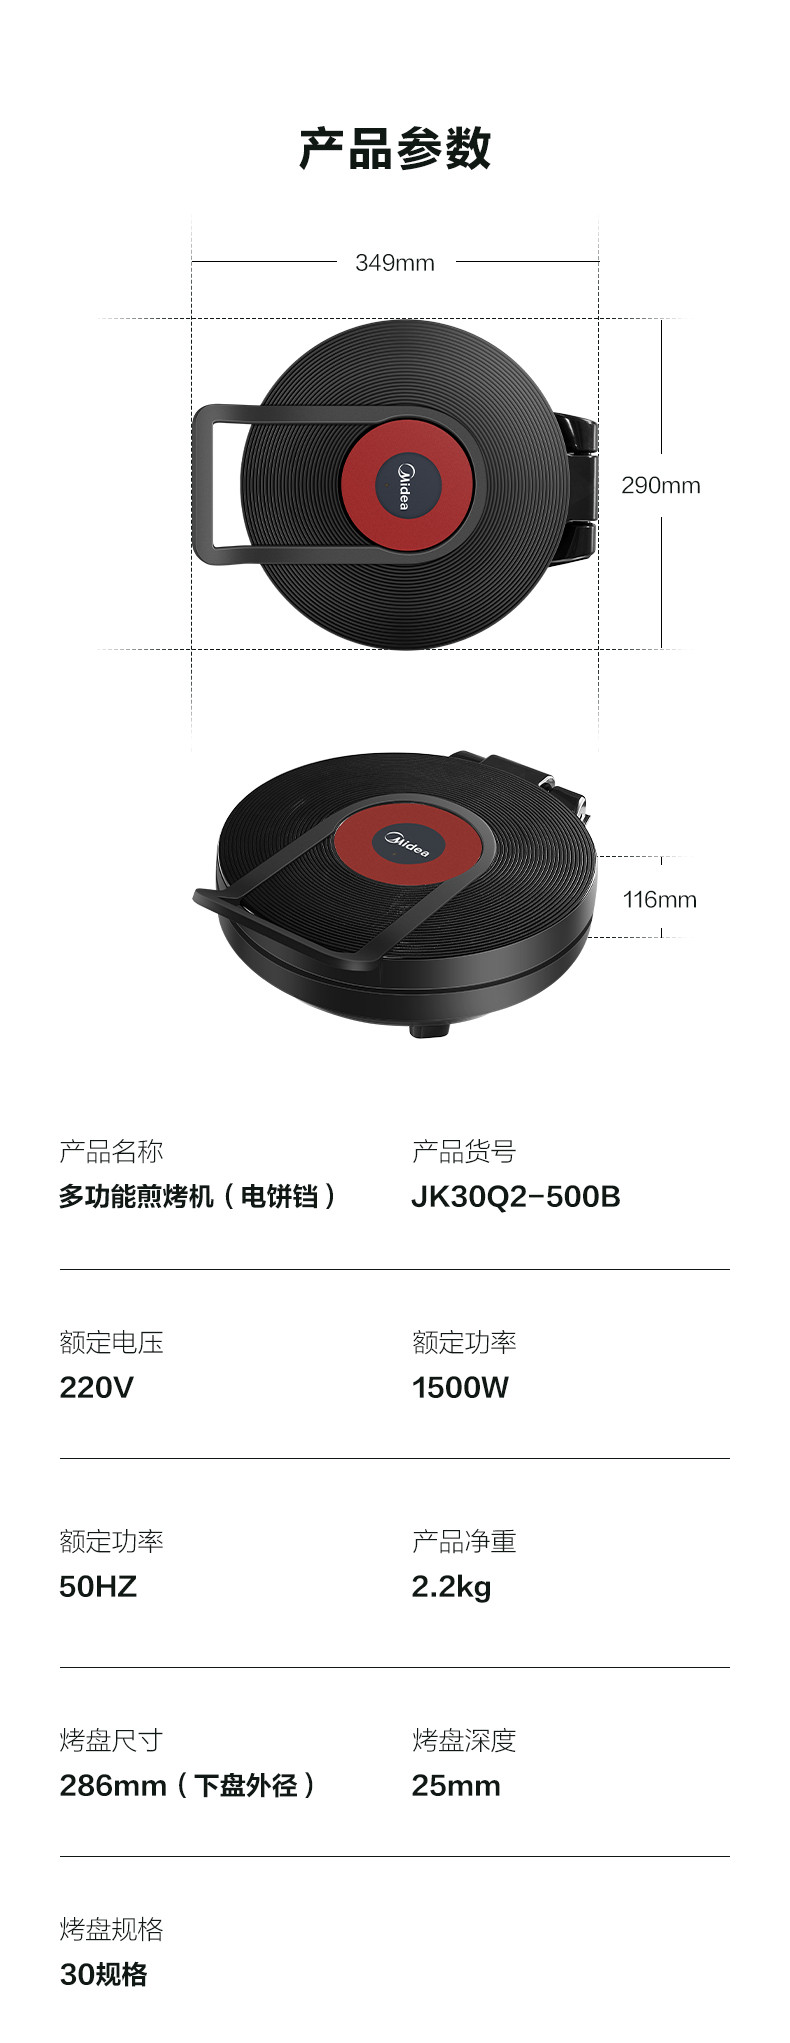 美的 煎烤机 JK30Q2-500